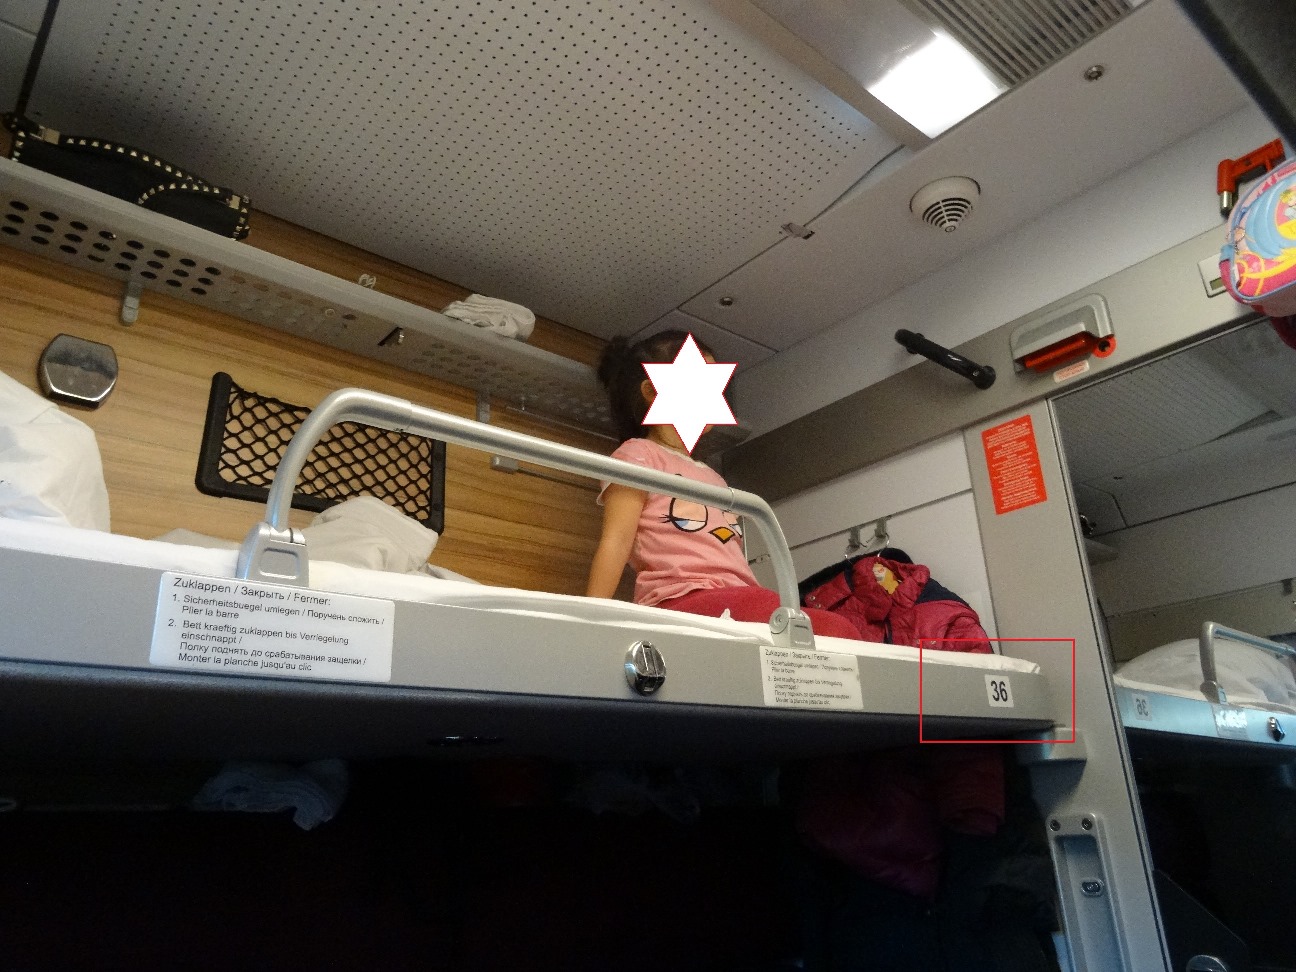 В париж на поезде из москвы